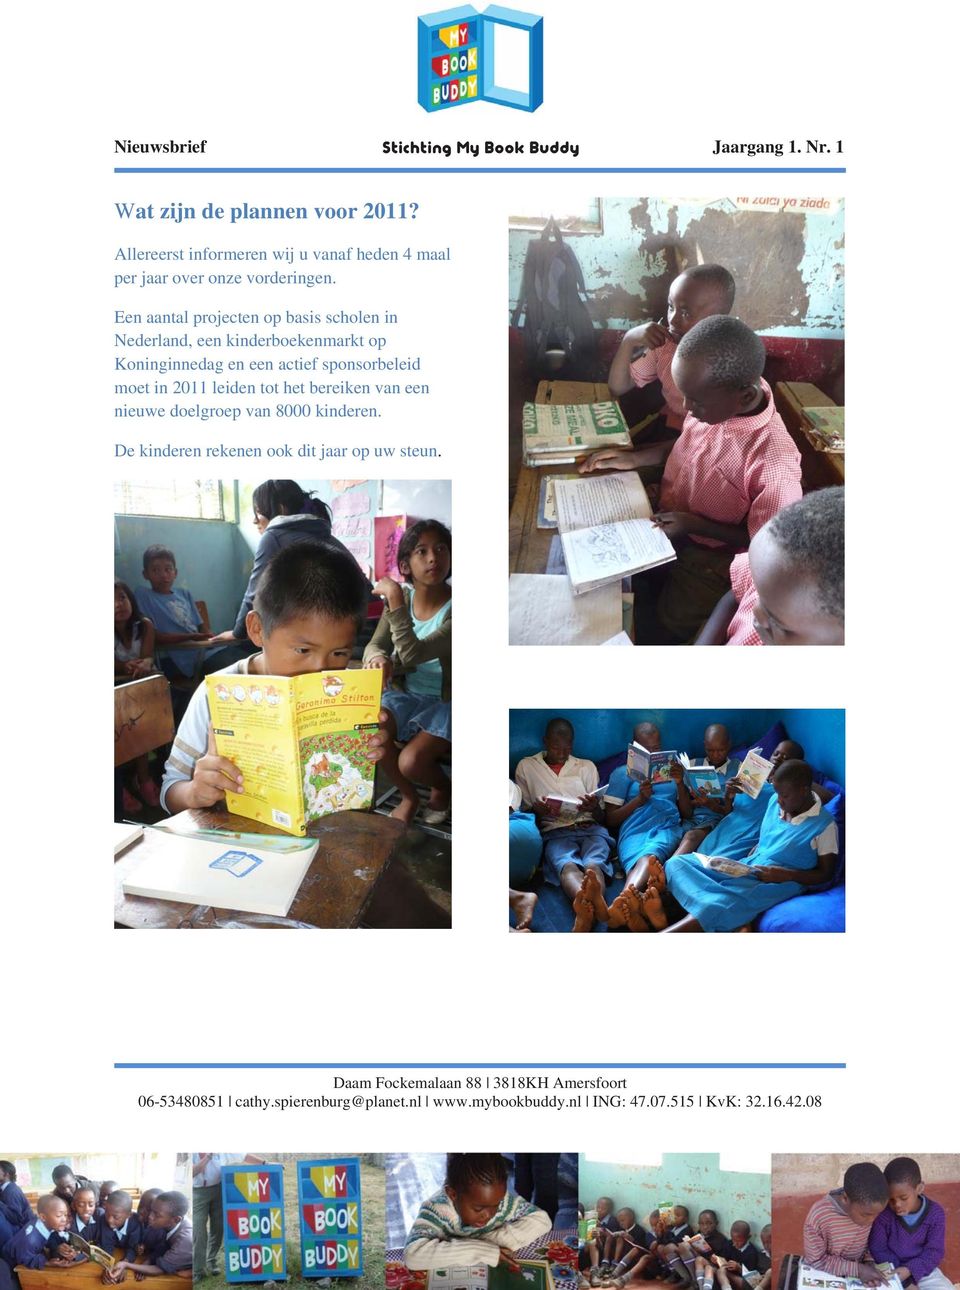 Een aantal projecten op basis scholen in Nederland, een kinderboekenmarkt op